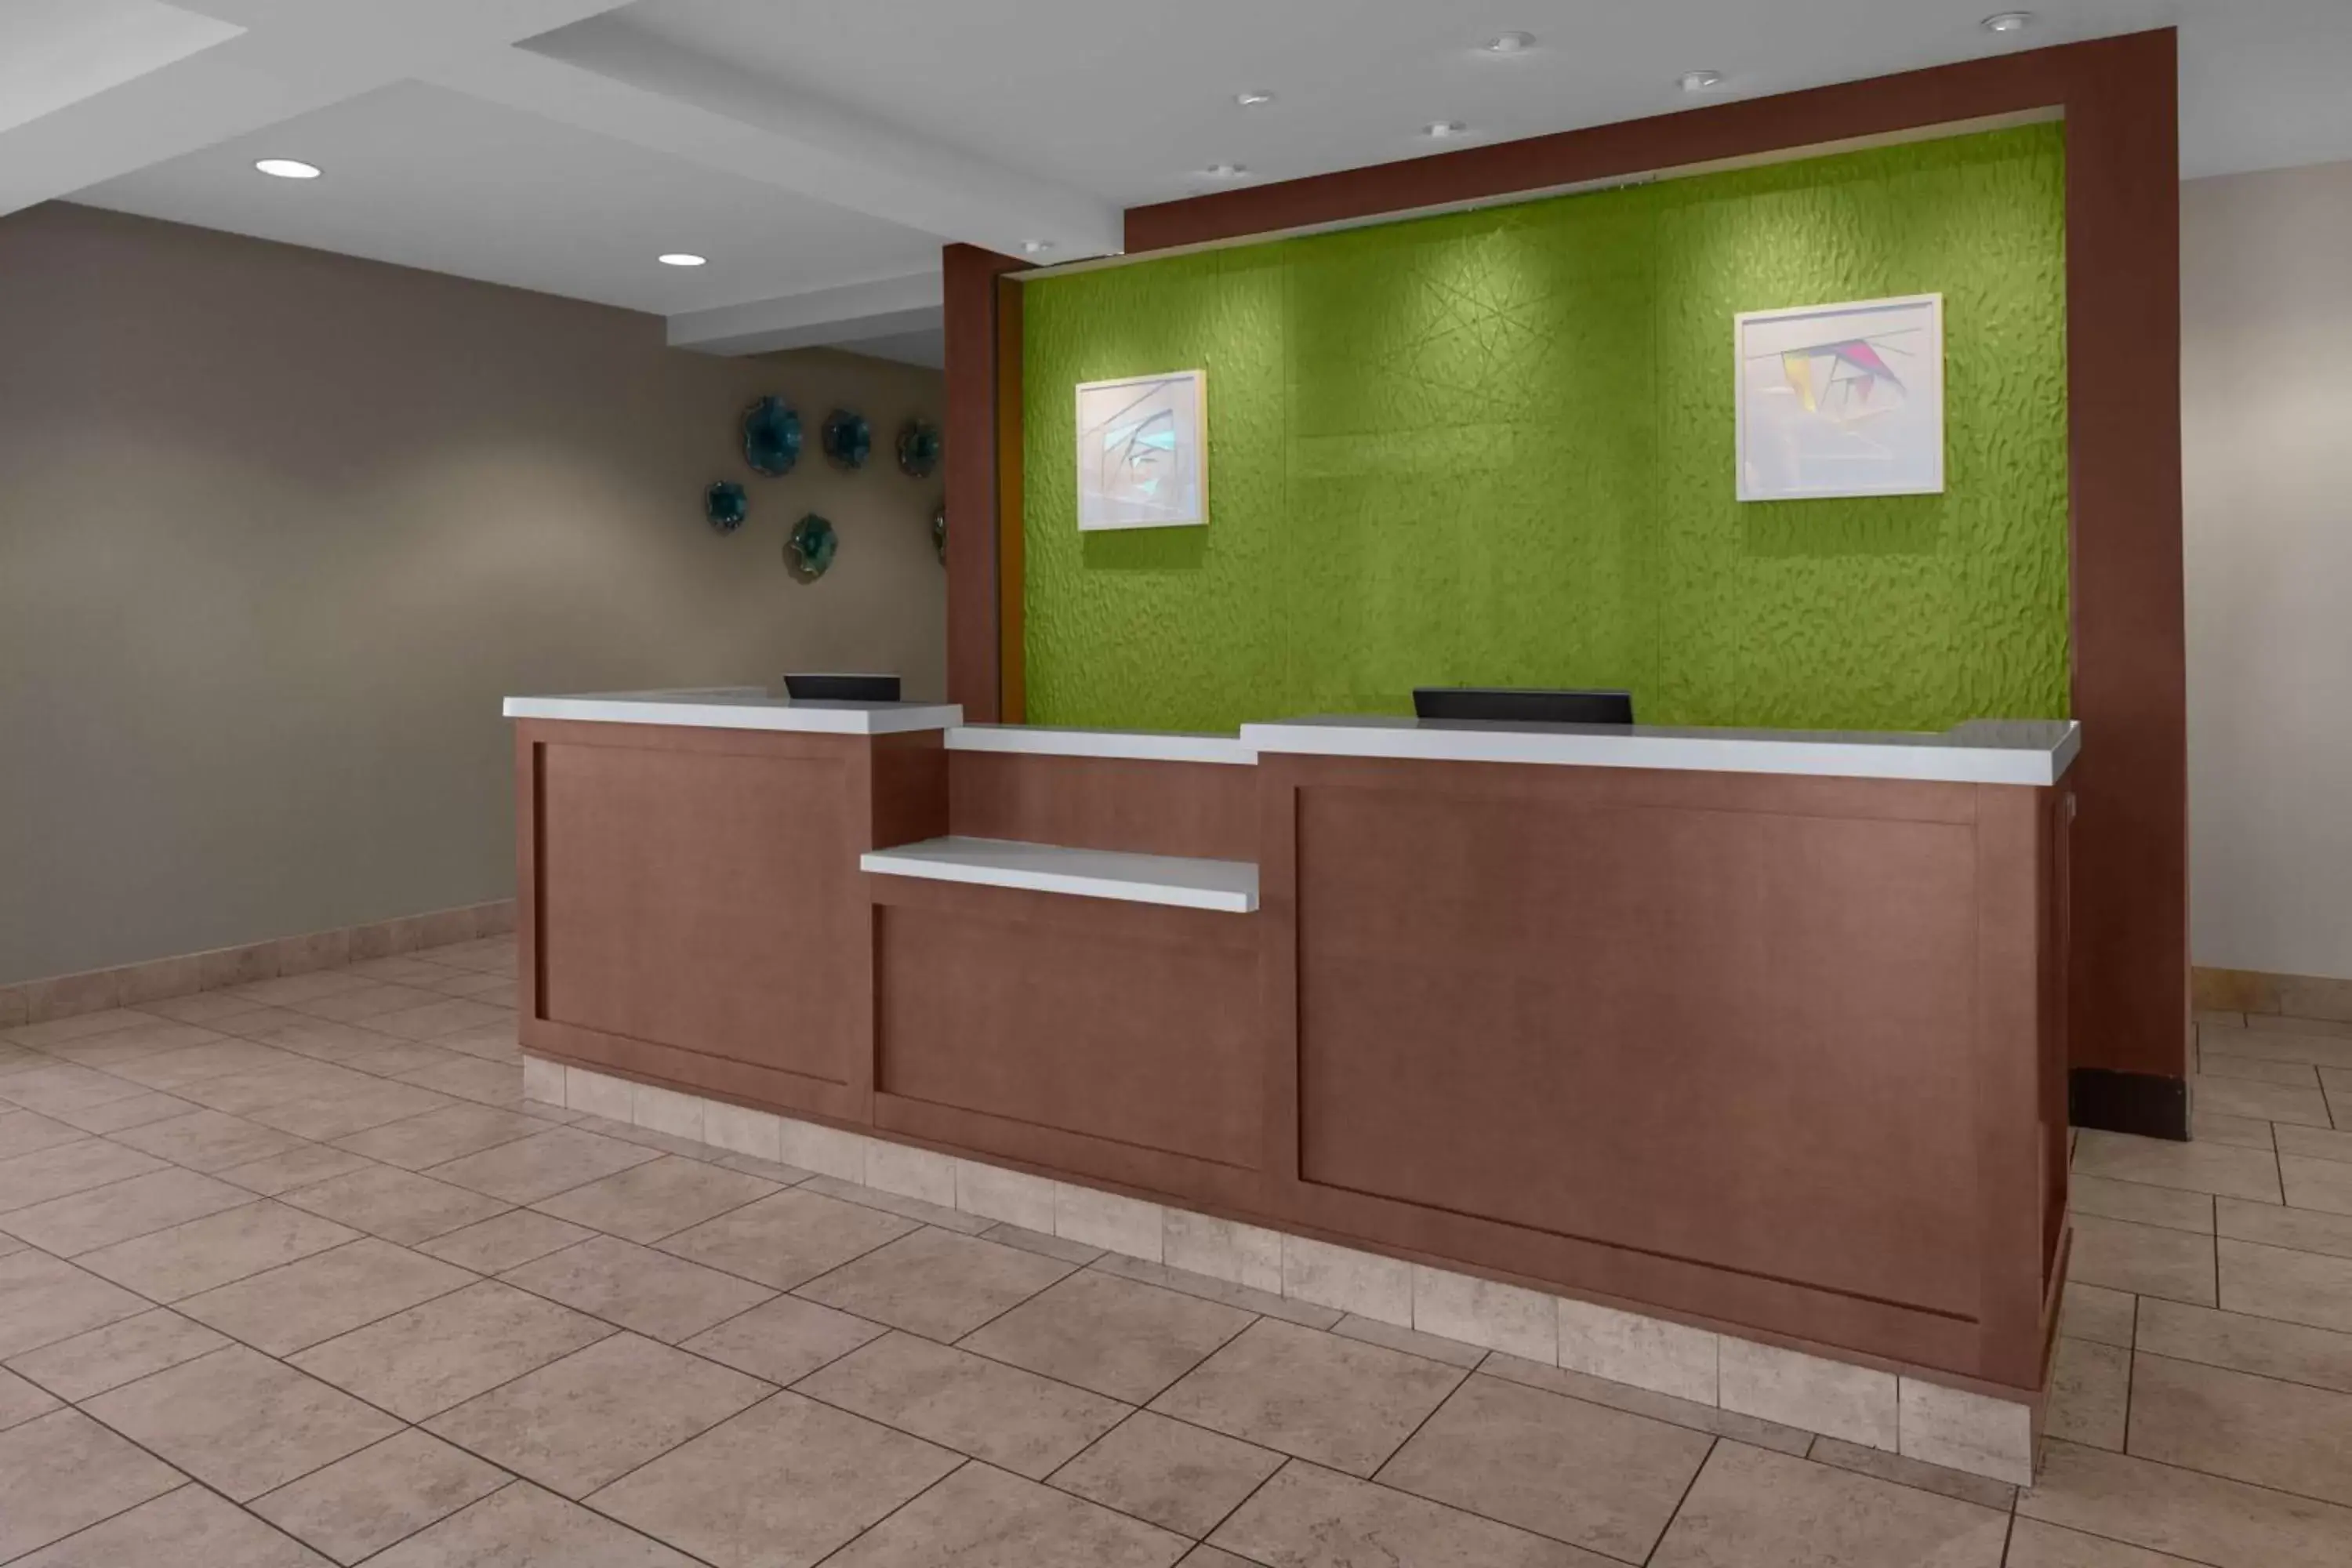 Lobby or reception, Lobby/Reception in Hilton Garden Inn - Salt Lake City Airport